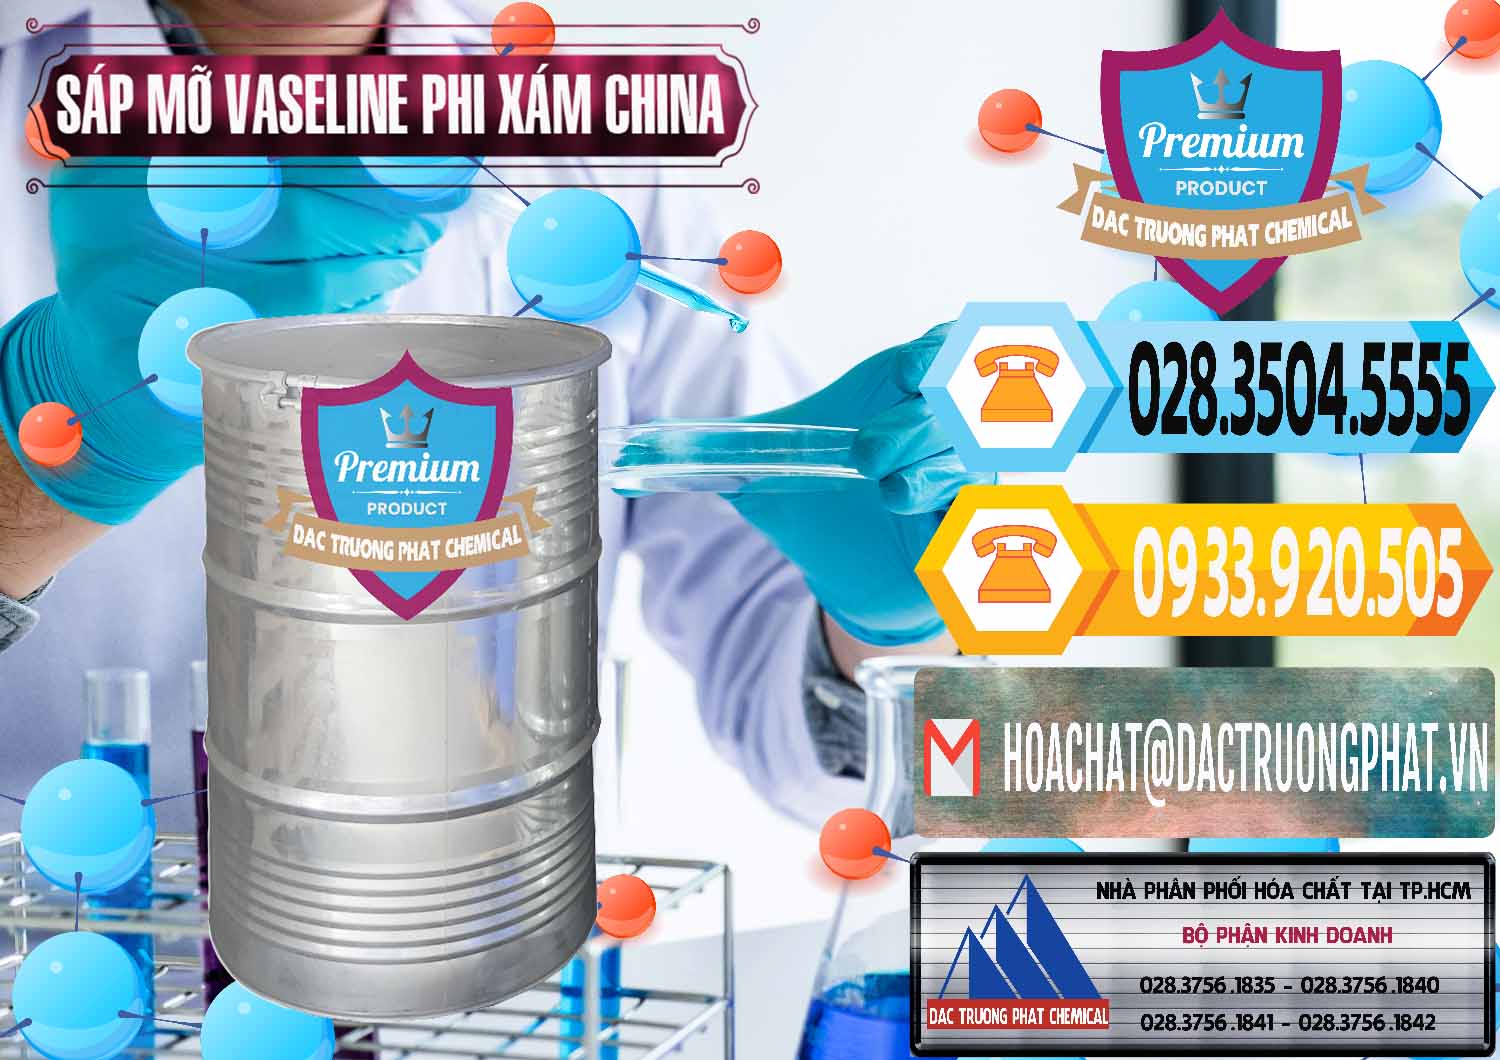 Công ty chuyên nhập khẩu - bán Sáp Mỡ Vaseline Phi Xám Trung Quốc China - 0291 - Nơi phân phối - nhập khẩu hóa chất tại TP.HCM - hoachattayrua.net